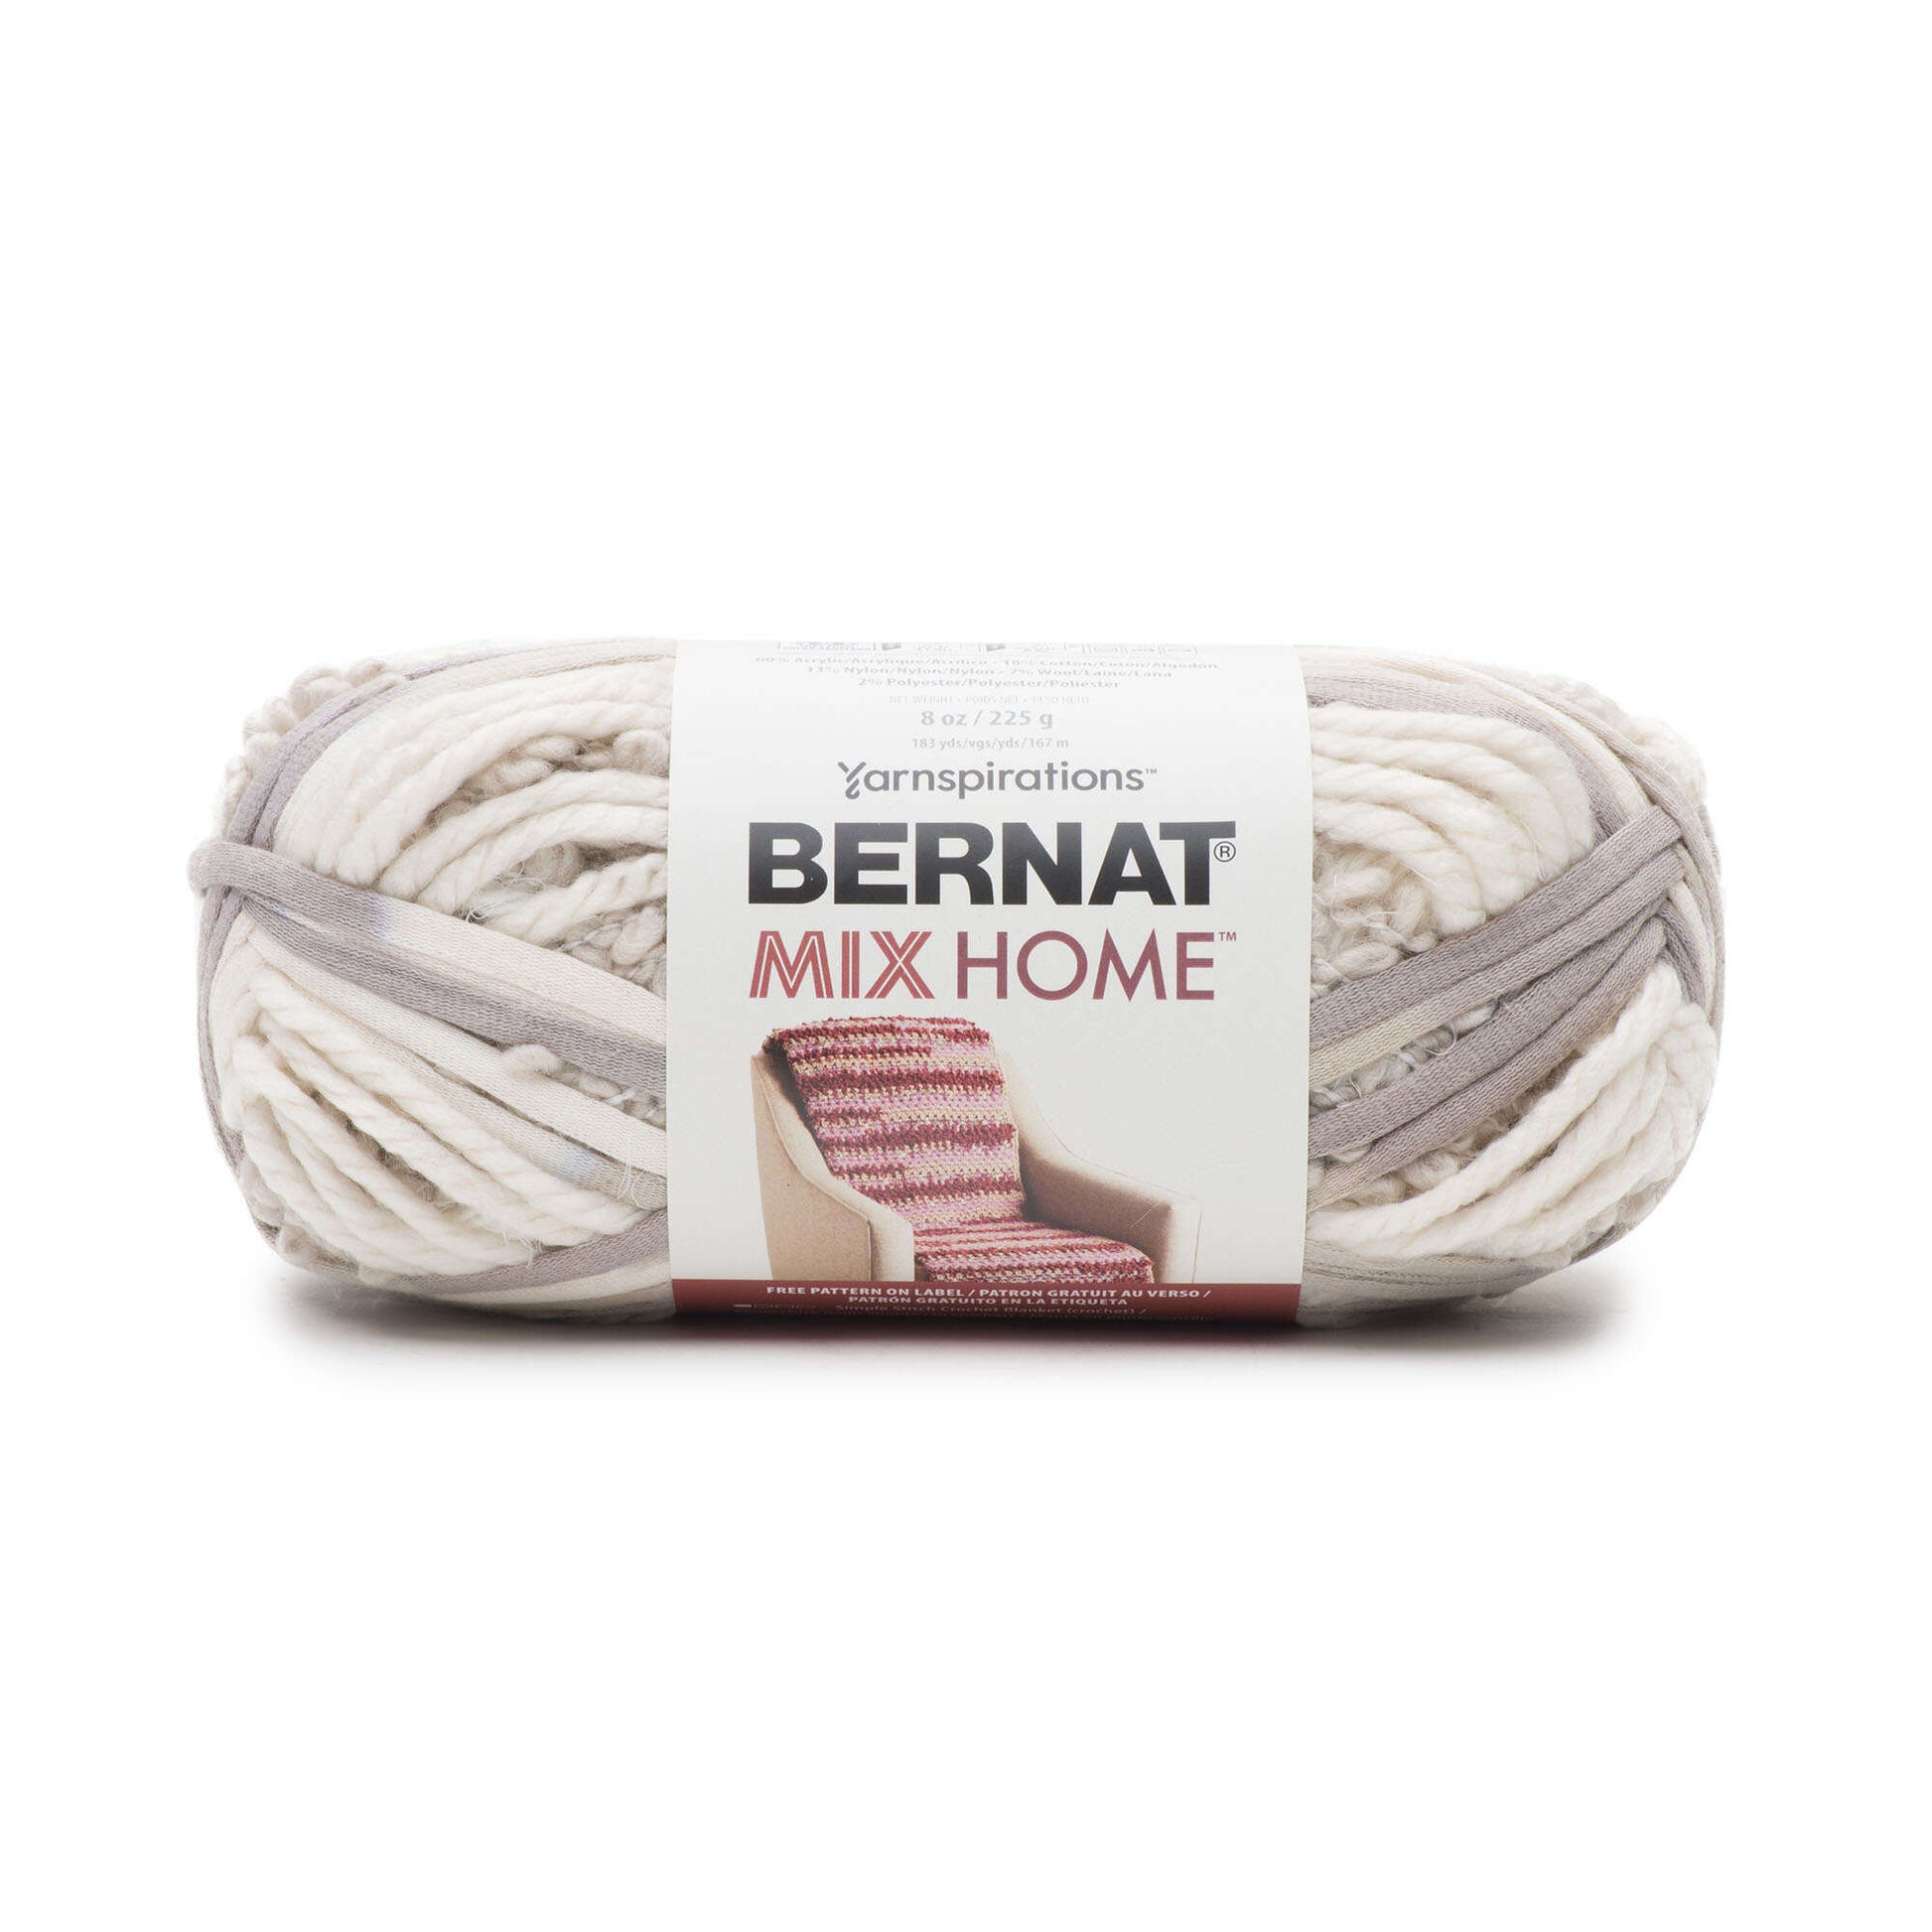 Bernat Mix Home Yarn - Discontinued Shades